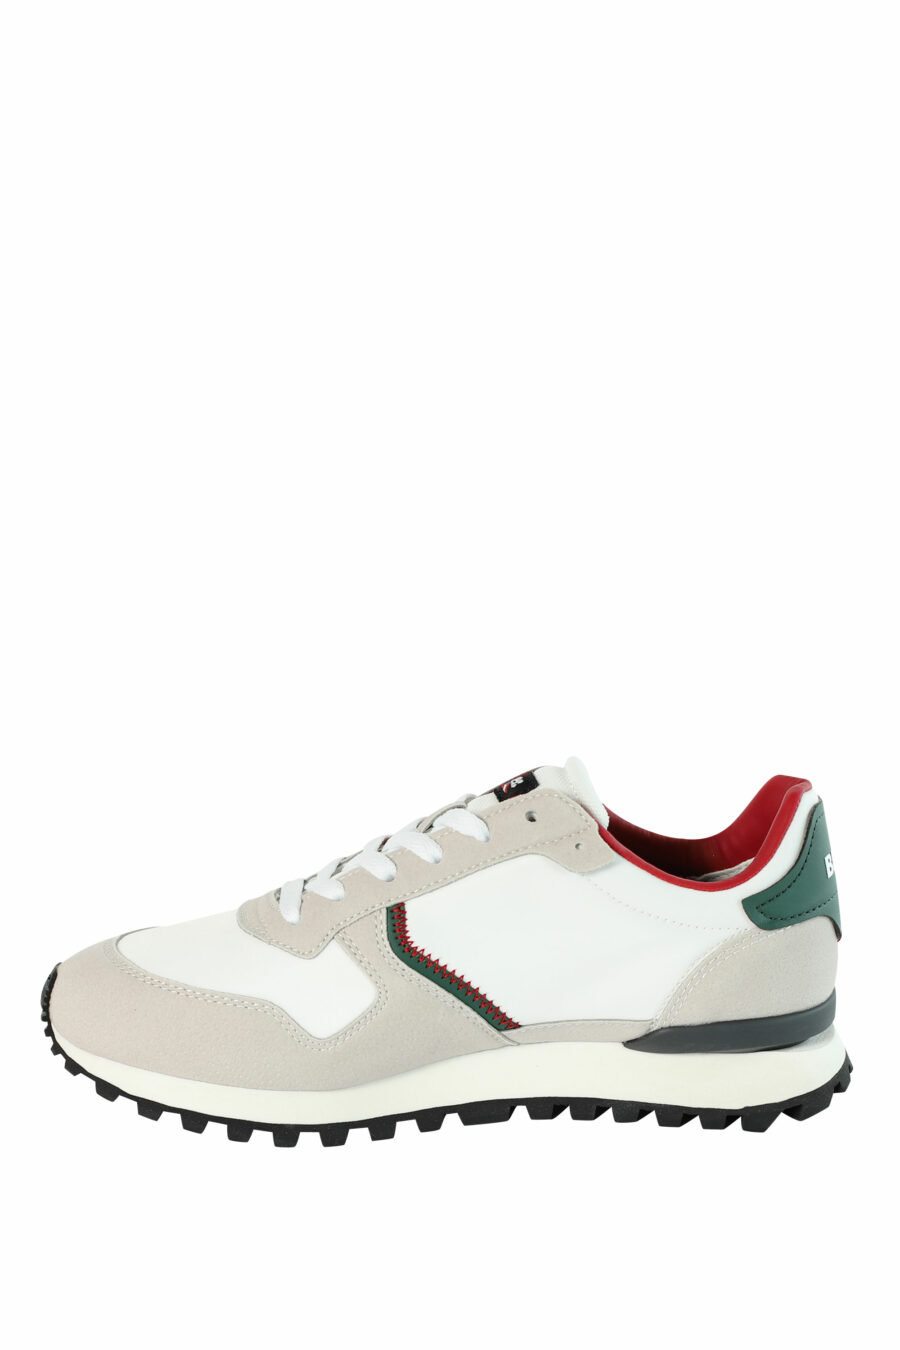 Zapatillas "DIXON" blancas mix con detalles rojos y verdes - 8058156493902 3